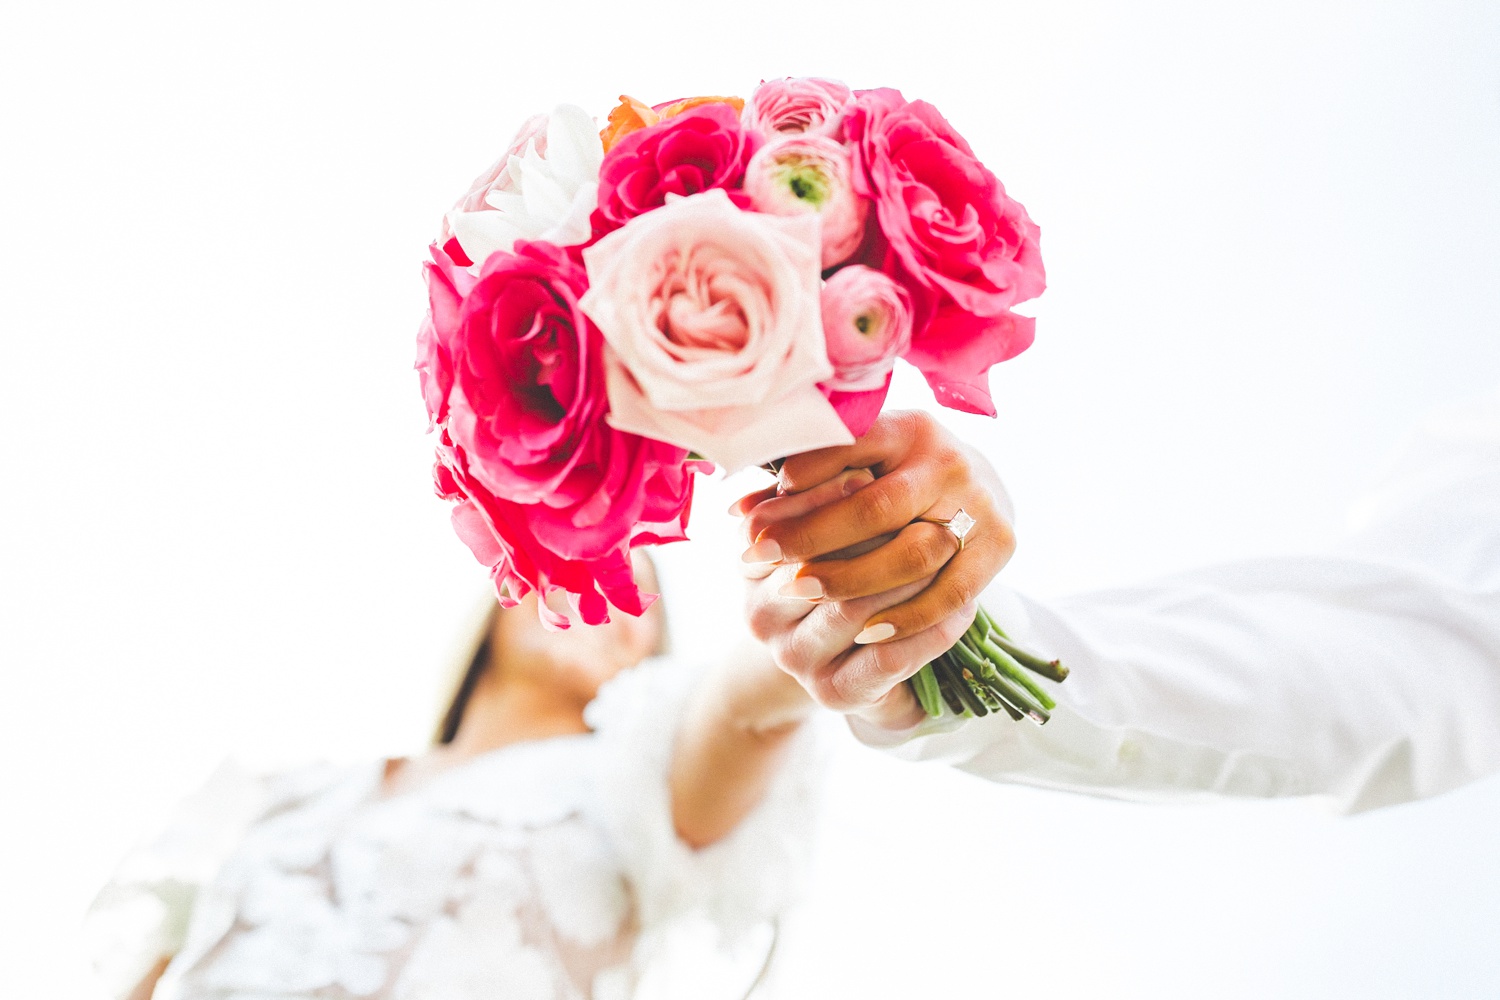 Unique Photograph of Bride Holding Bouquet